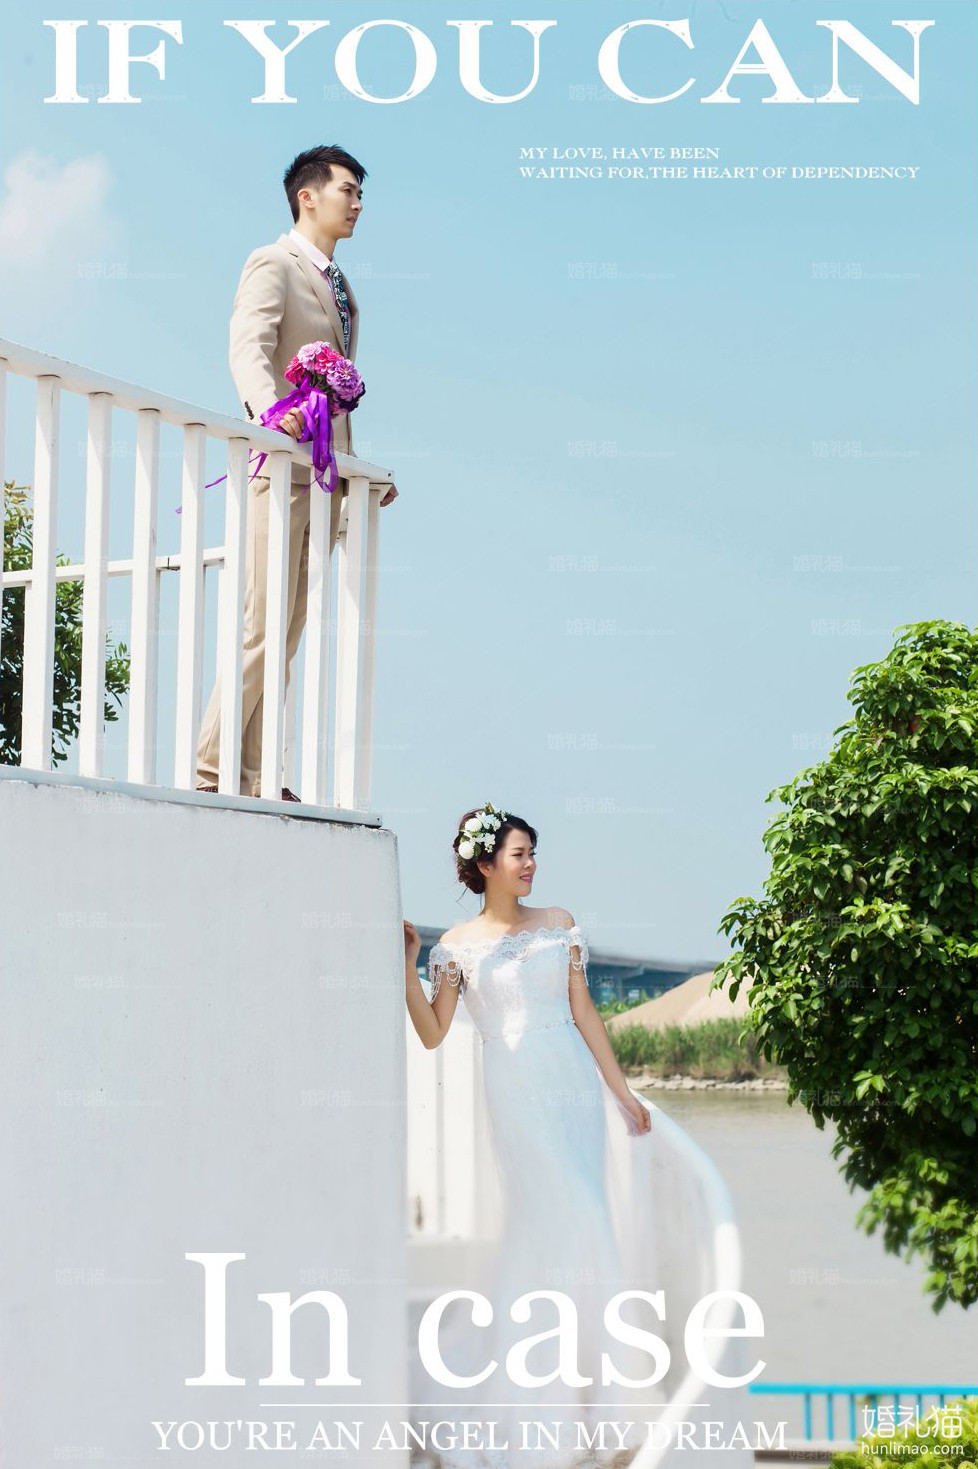 2017年7月广州结婚照,,茂名婚纱照,婚纱照图片